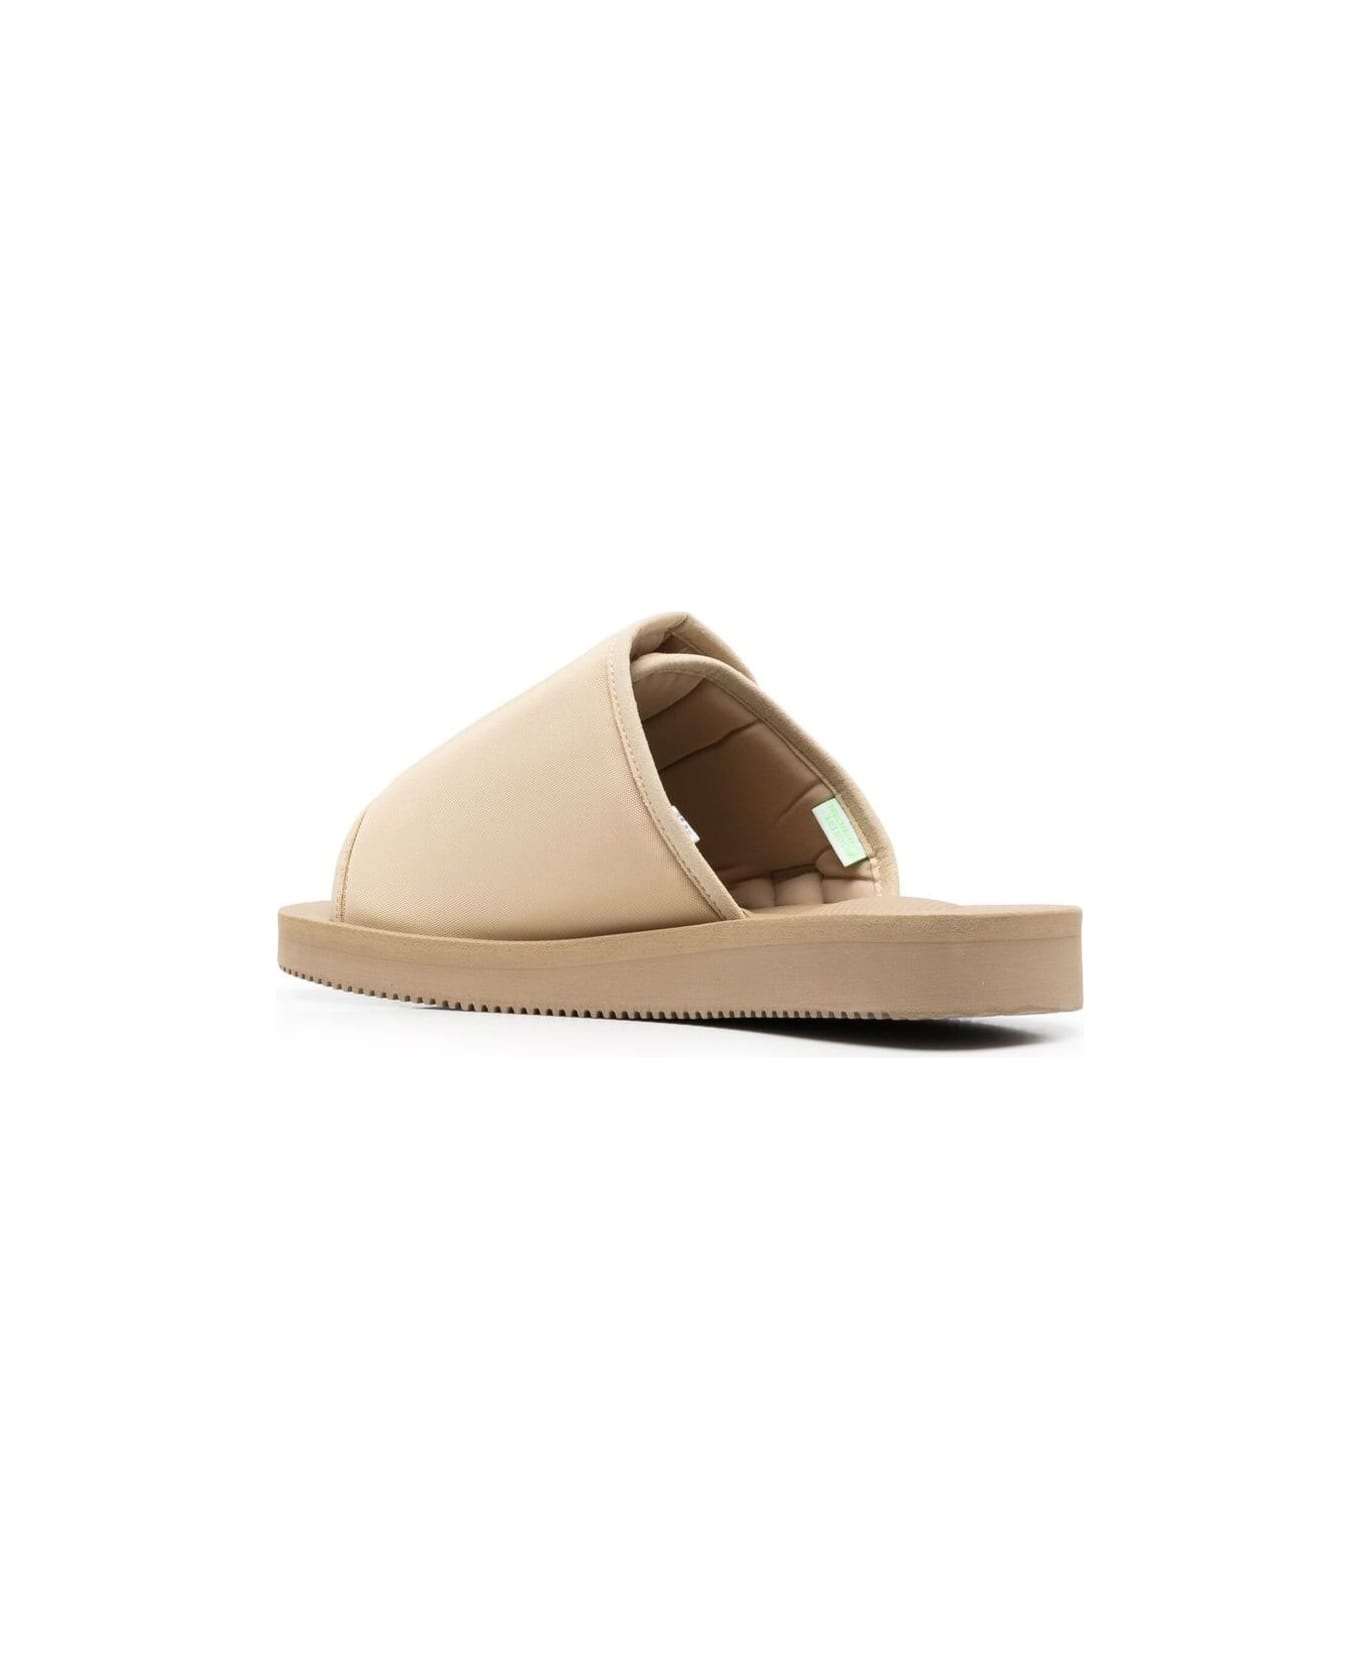 SUICOKE 'kaw-cab' Beige Sandals With Velcro Fastening In Nylon Man Suicoke - Beige